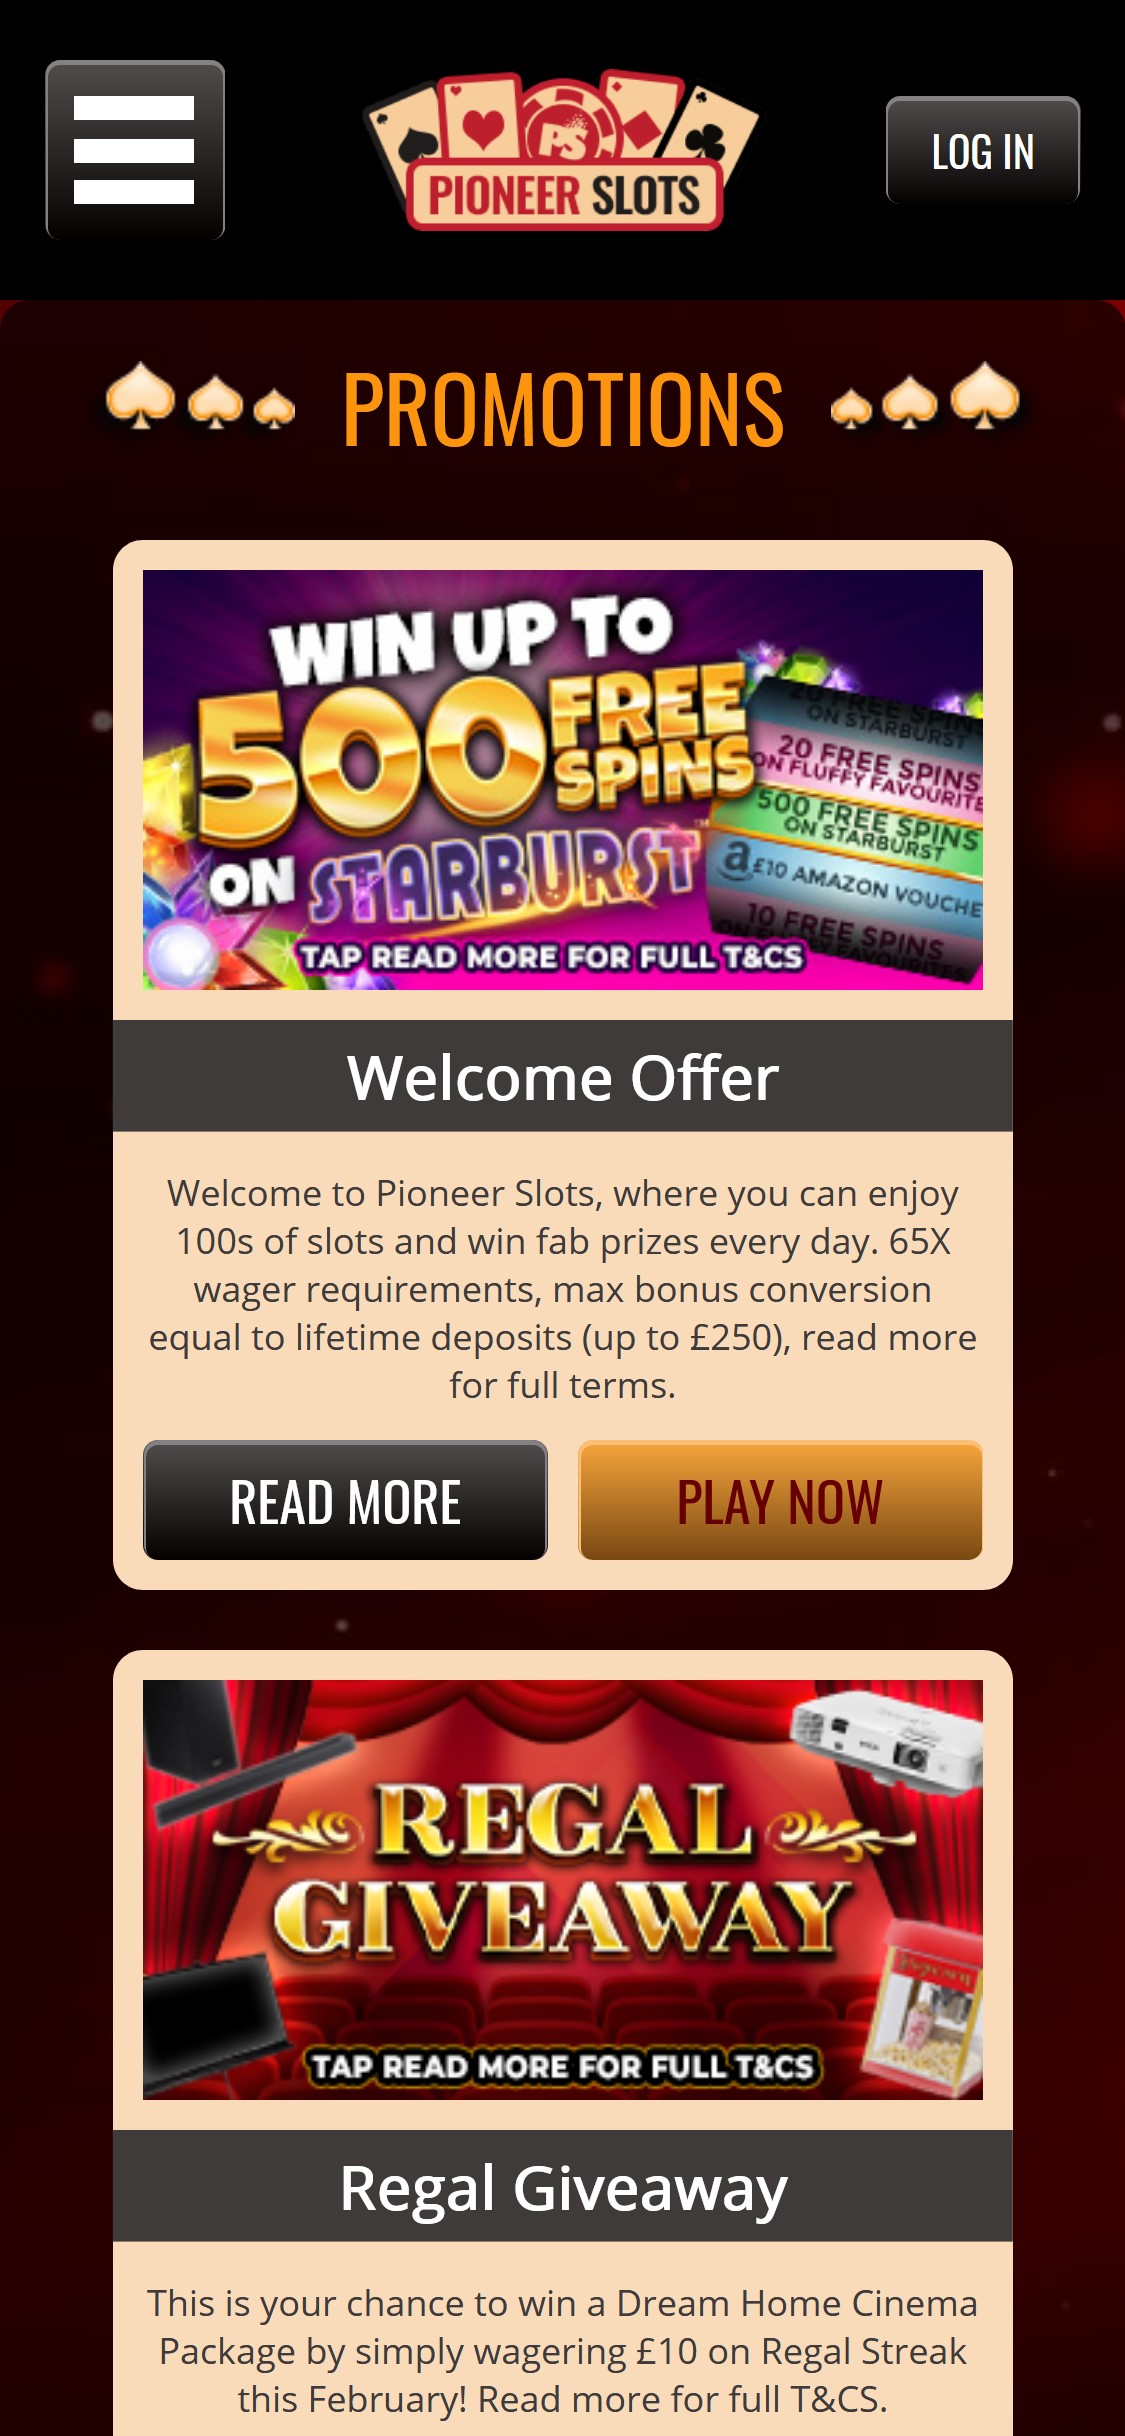 Pioneer Slots Casino Mobile No Deposit Bonus Review